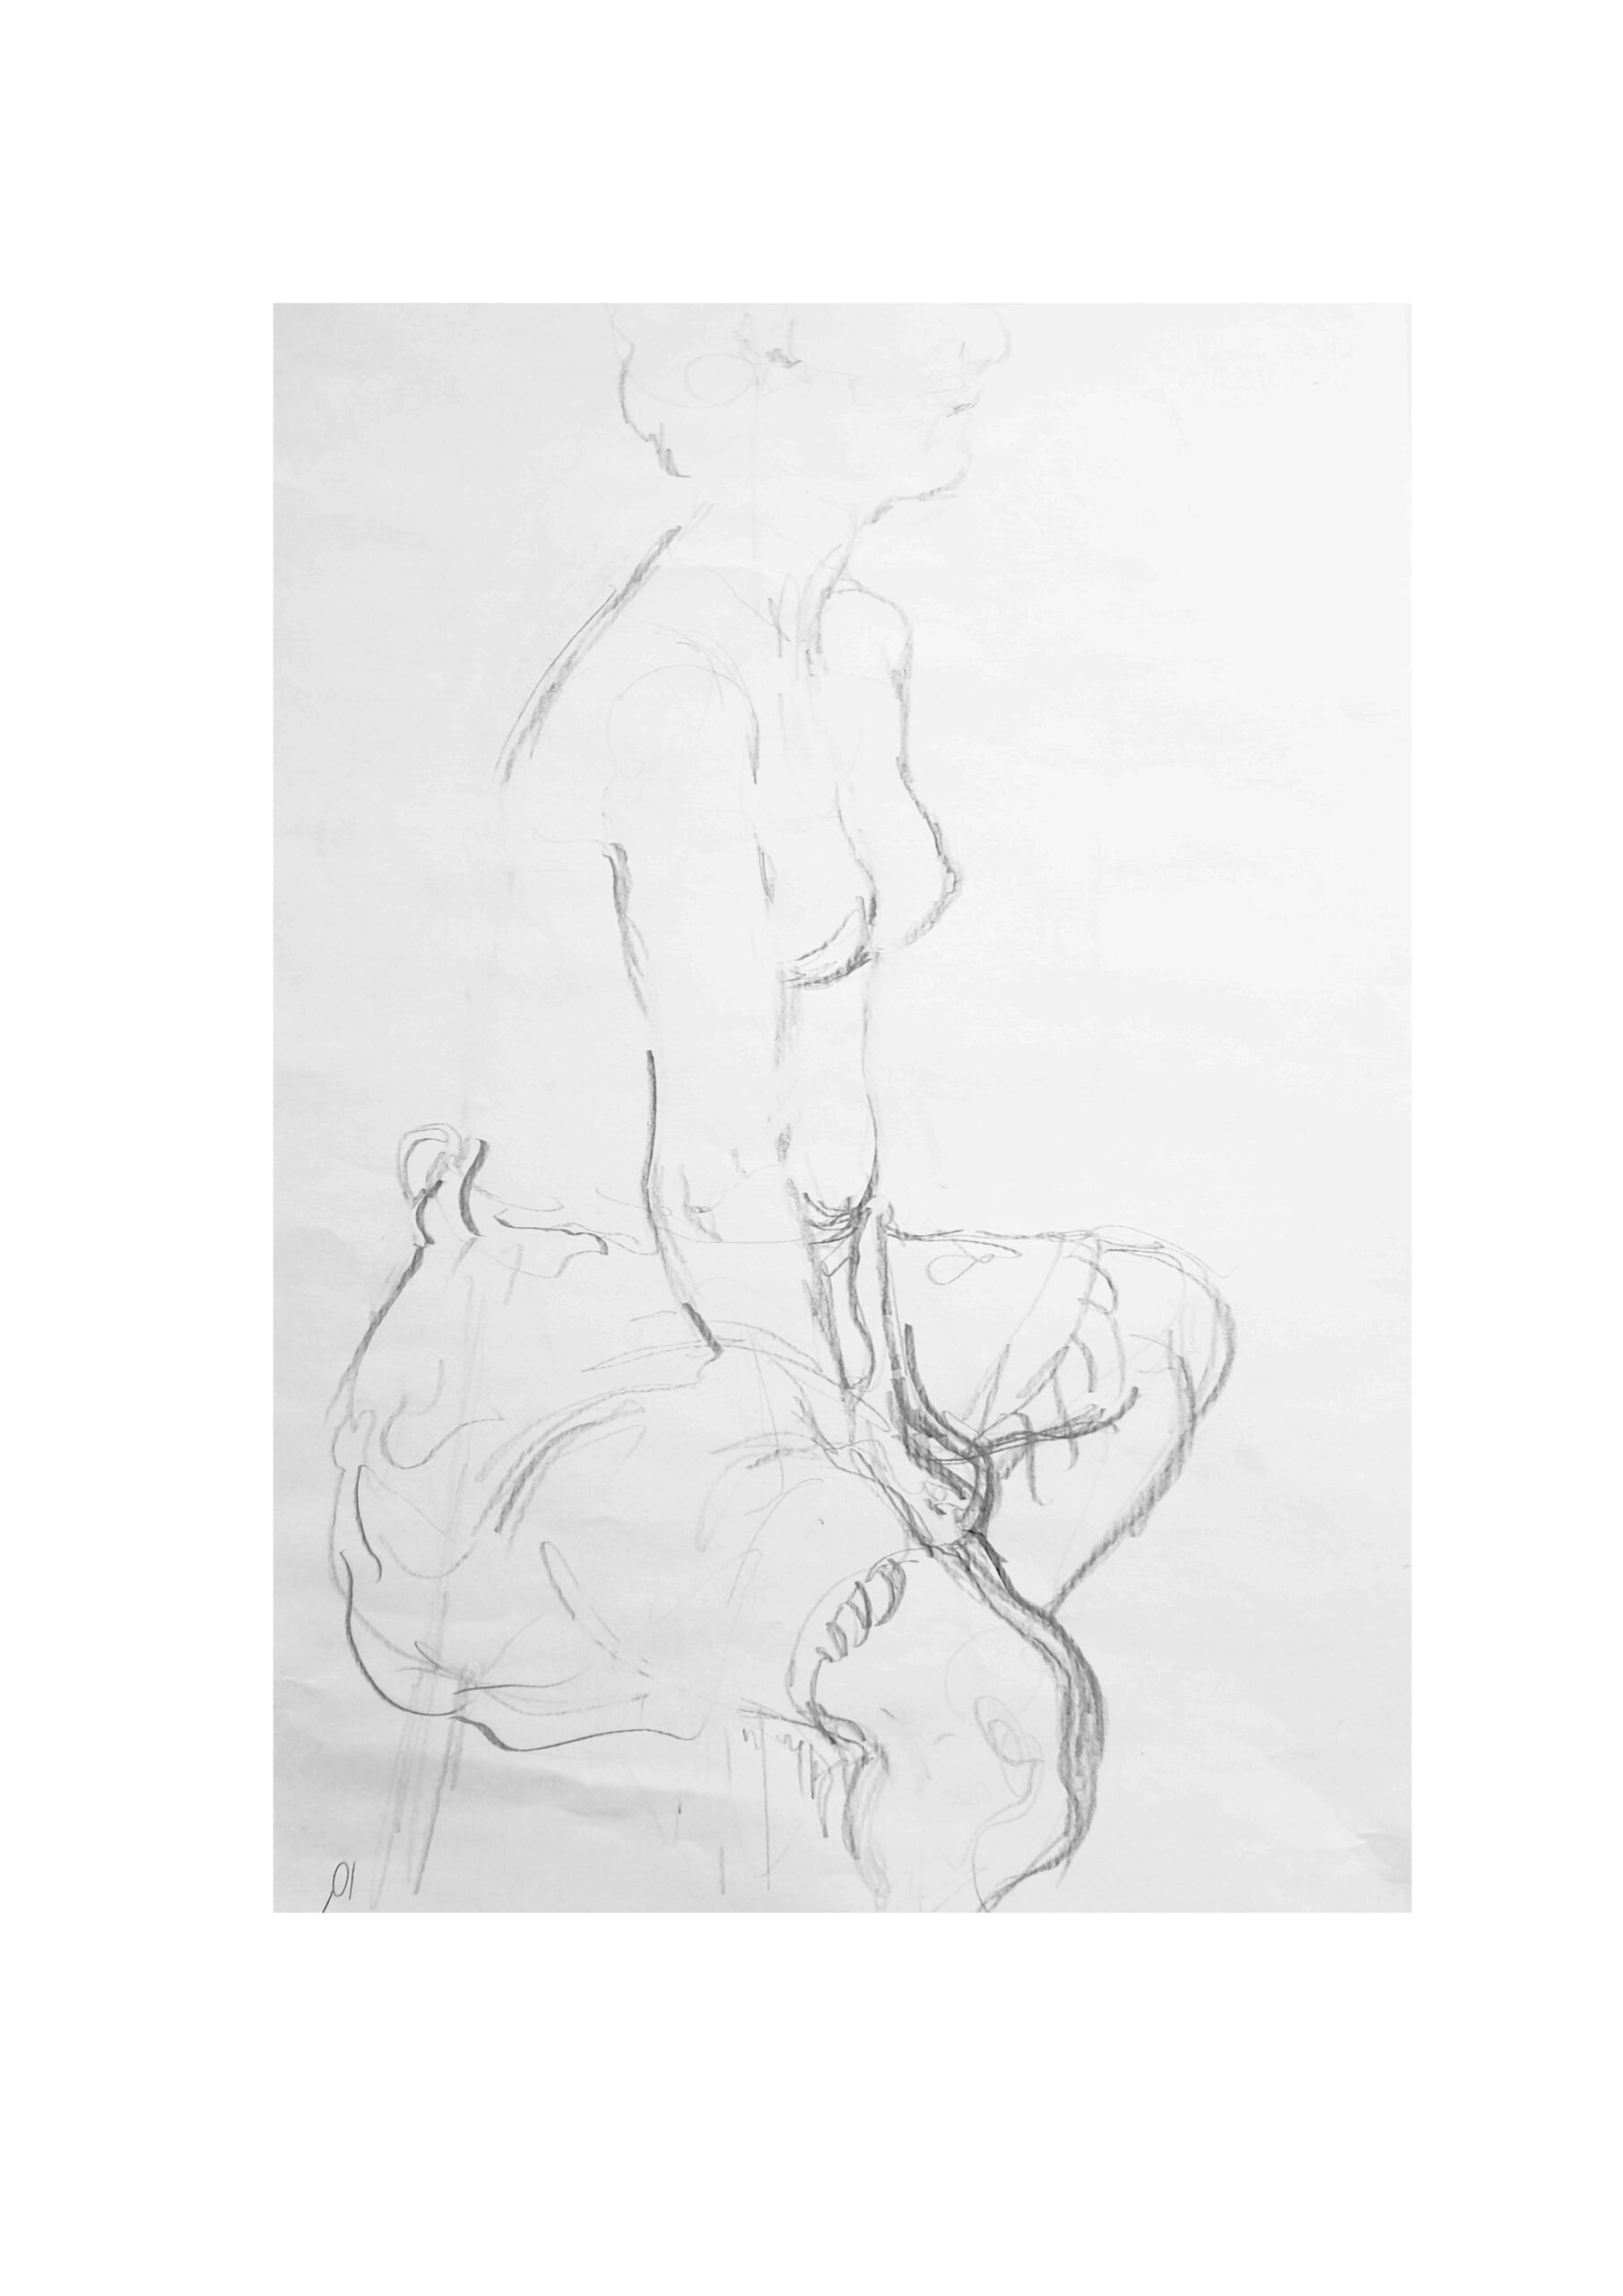 Εβίνα, σχέδιο με φούστα, μολύβι σε χαρτί, 29x21 εκ, 2022